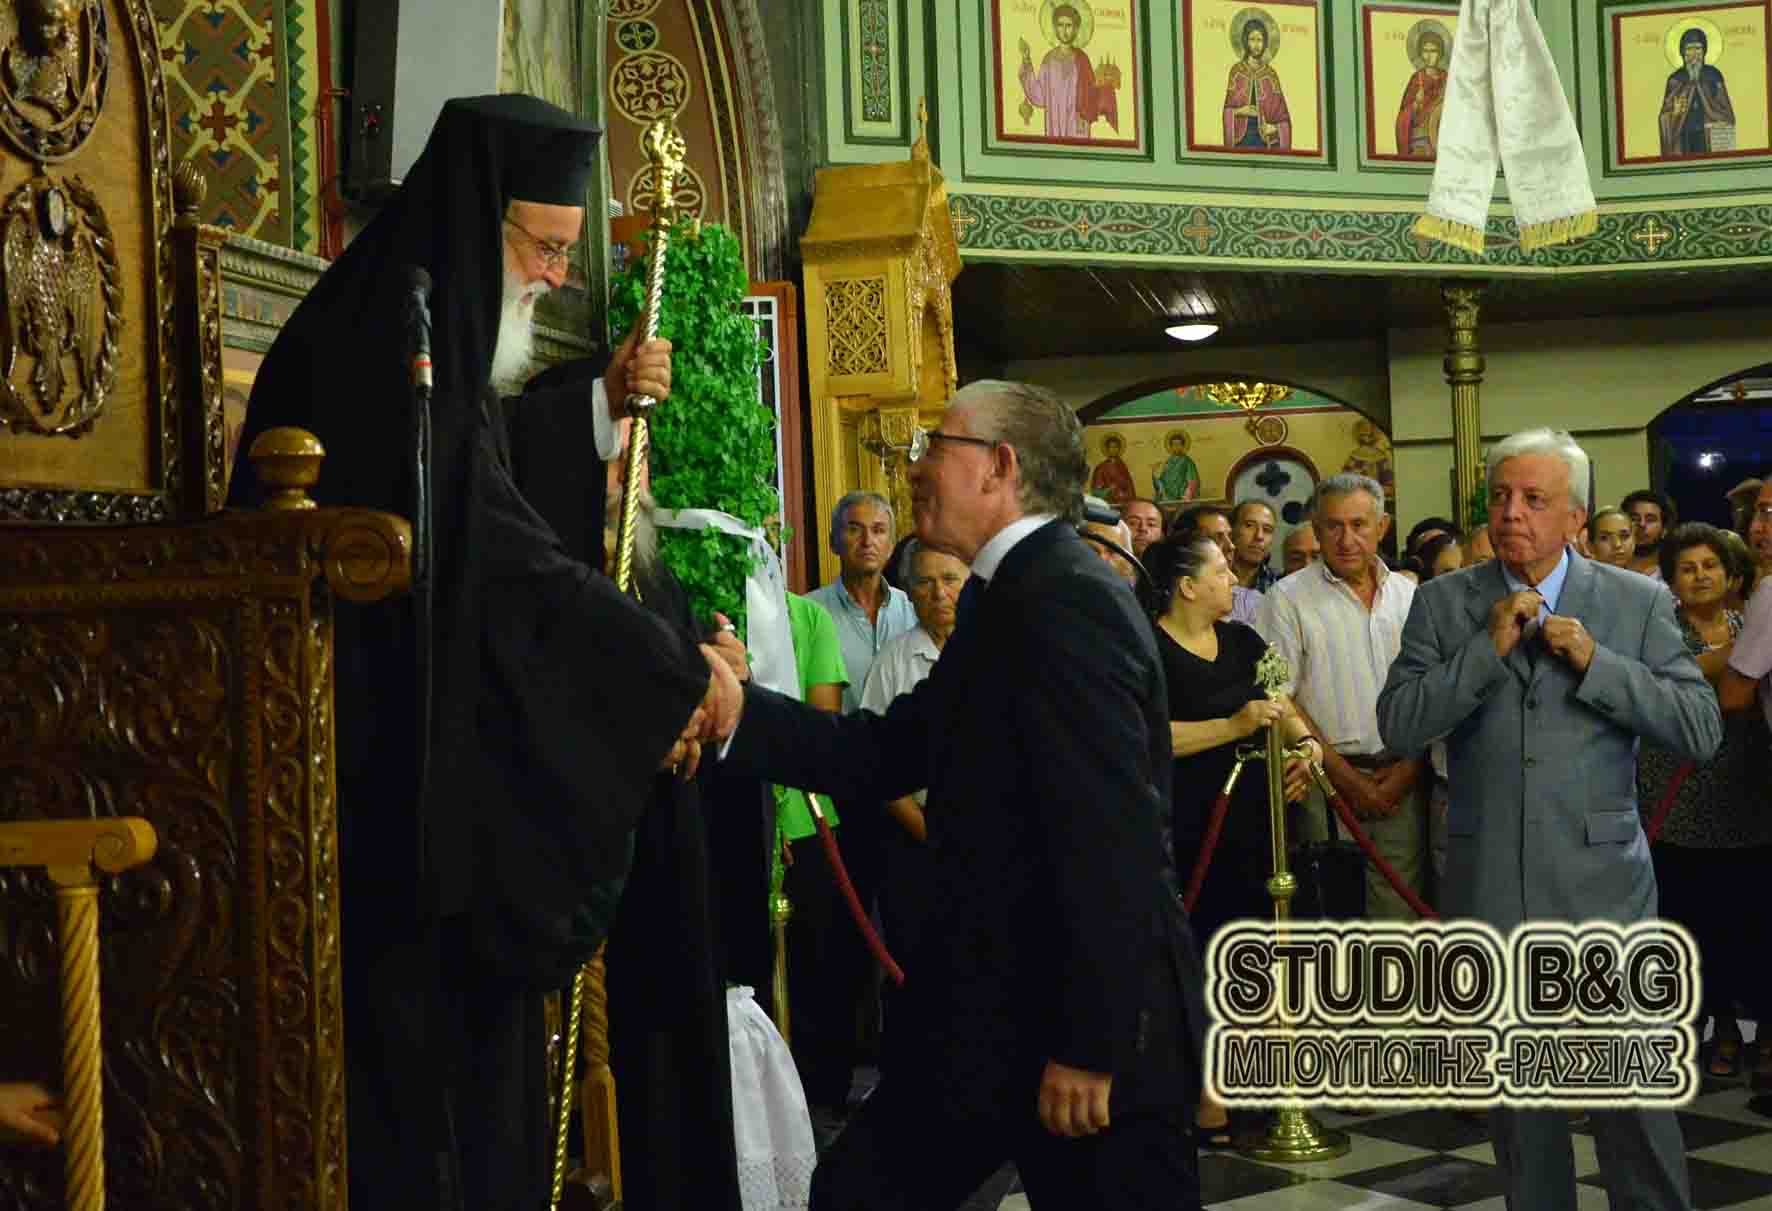 Ο Μητροπολίτης Μαντινείας Αλέξανδρος στον εορτασμό των Αγίων Ανδριανού και Ναταλίας στο Δρέπανο Ναυπλίας (εικόνες)